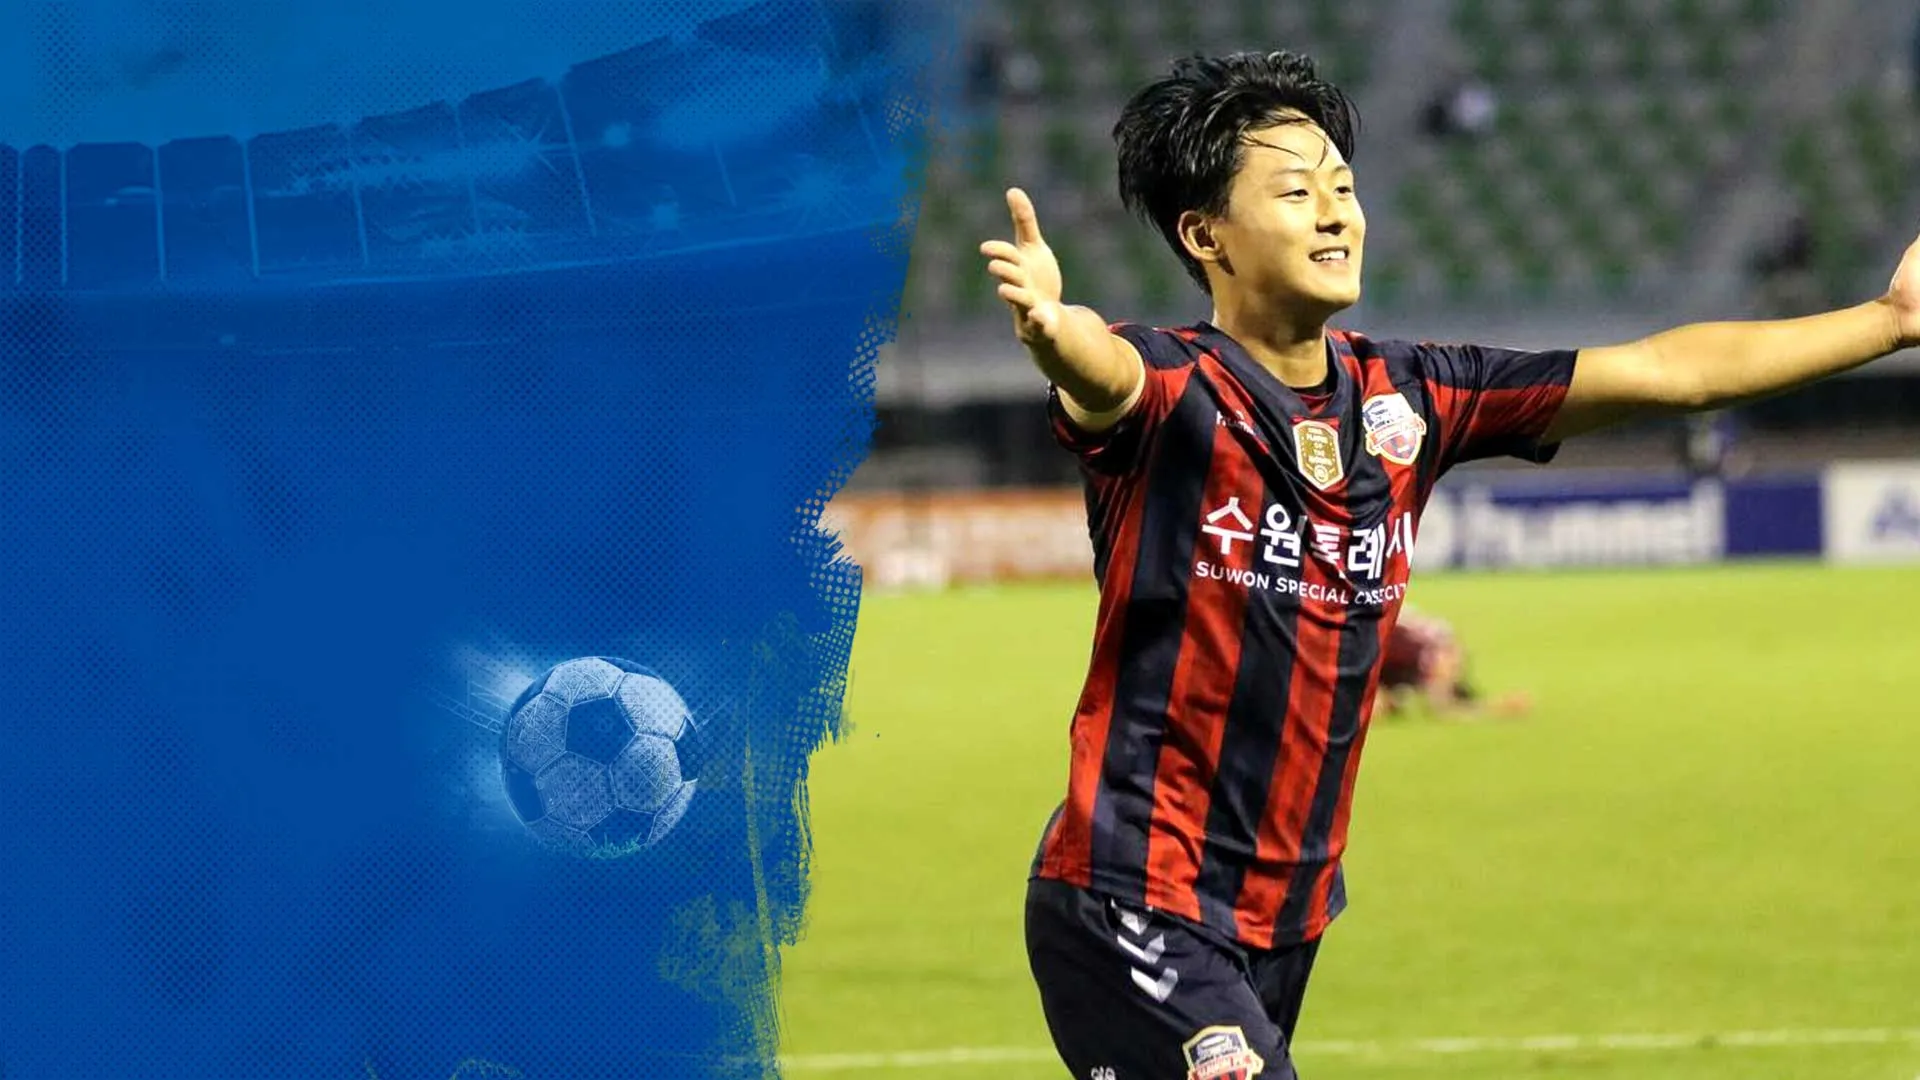 Điểm Nhấn Vòng 32 K-League: Xác Định Nhóm Chắc Suất Tranh Vô Địch Và Đua Trụ Hạng